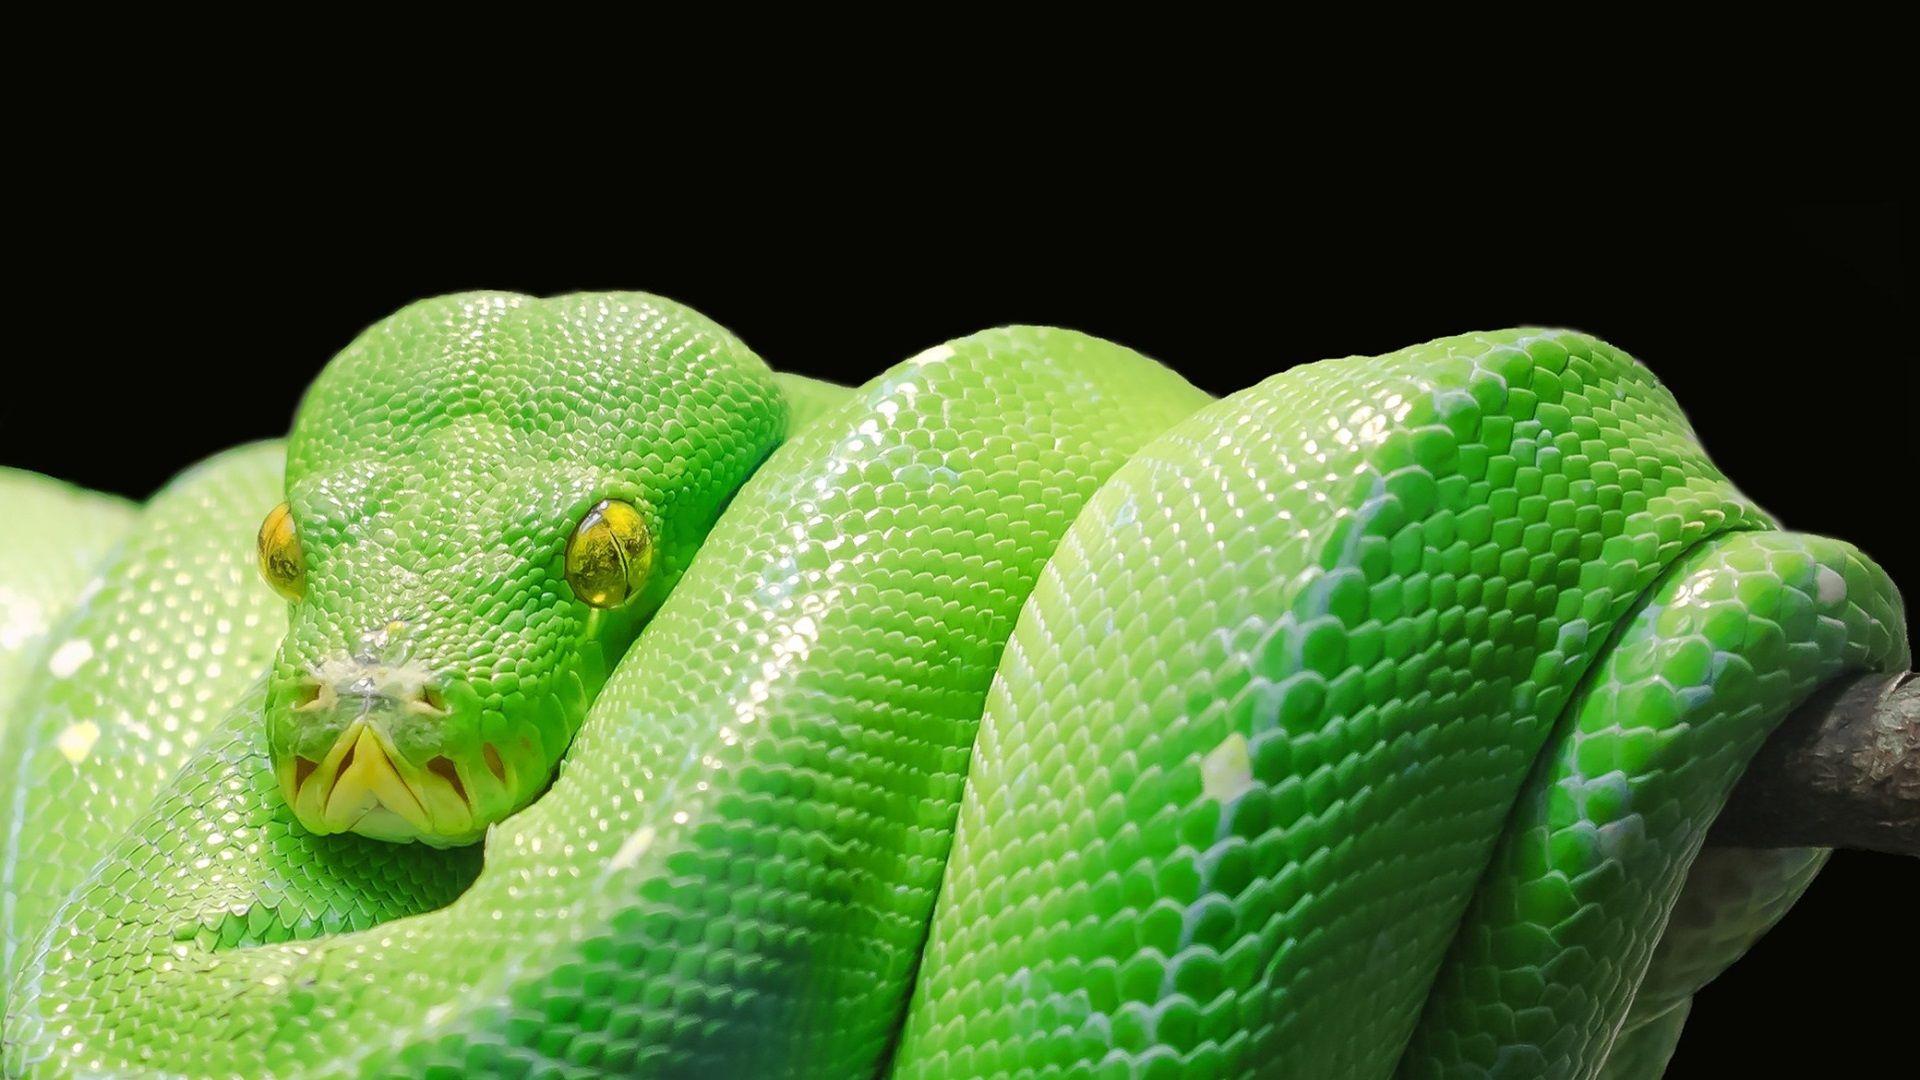 Python Snake Wallpapers